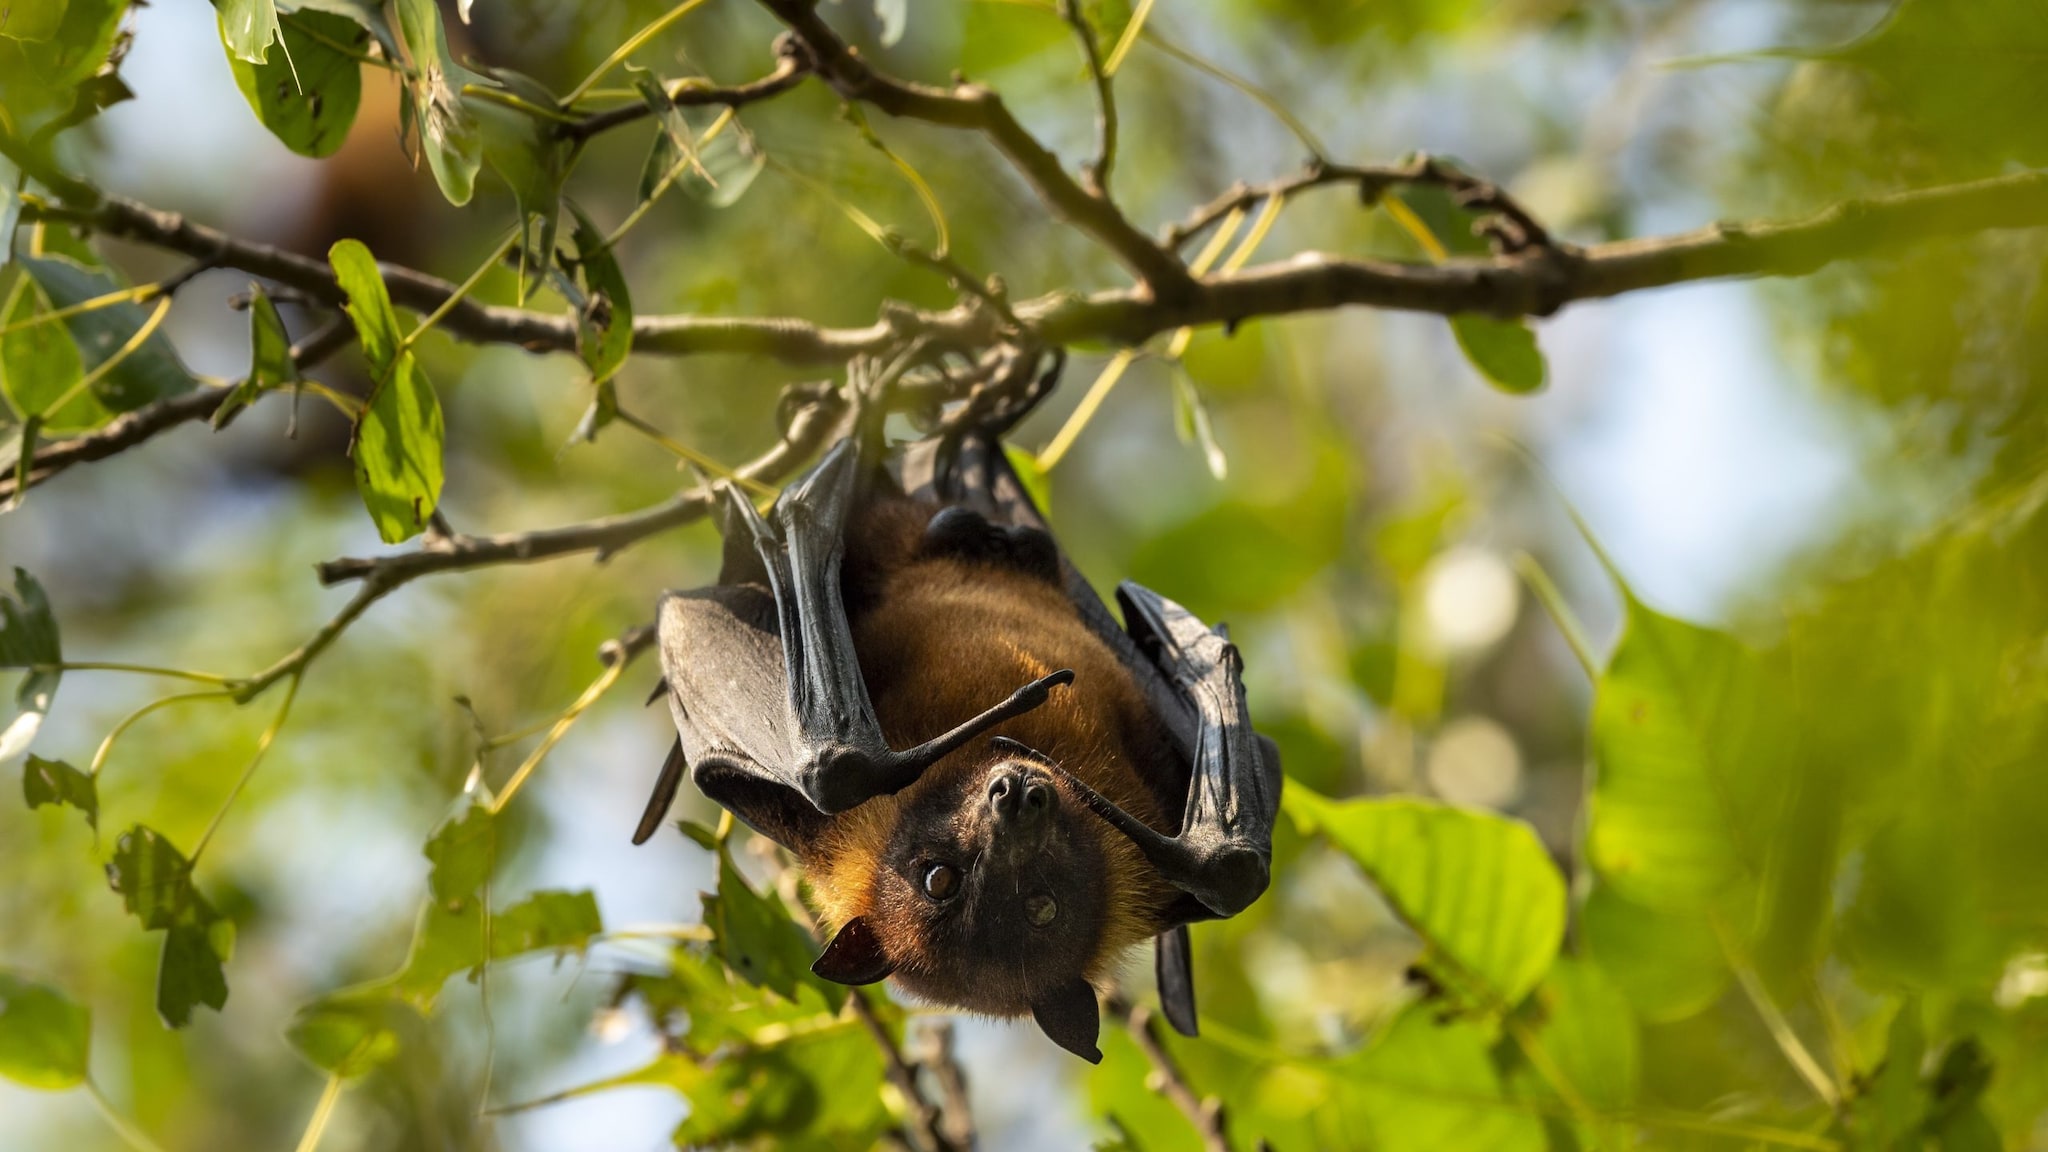 A flying fox fruit bat hangs upside down in a tree